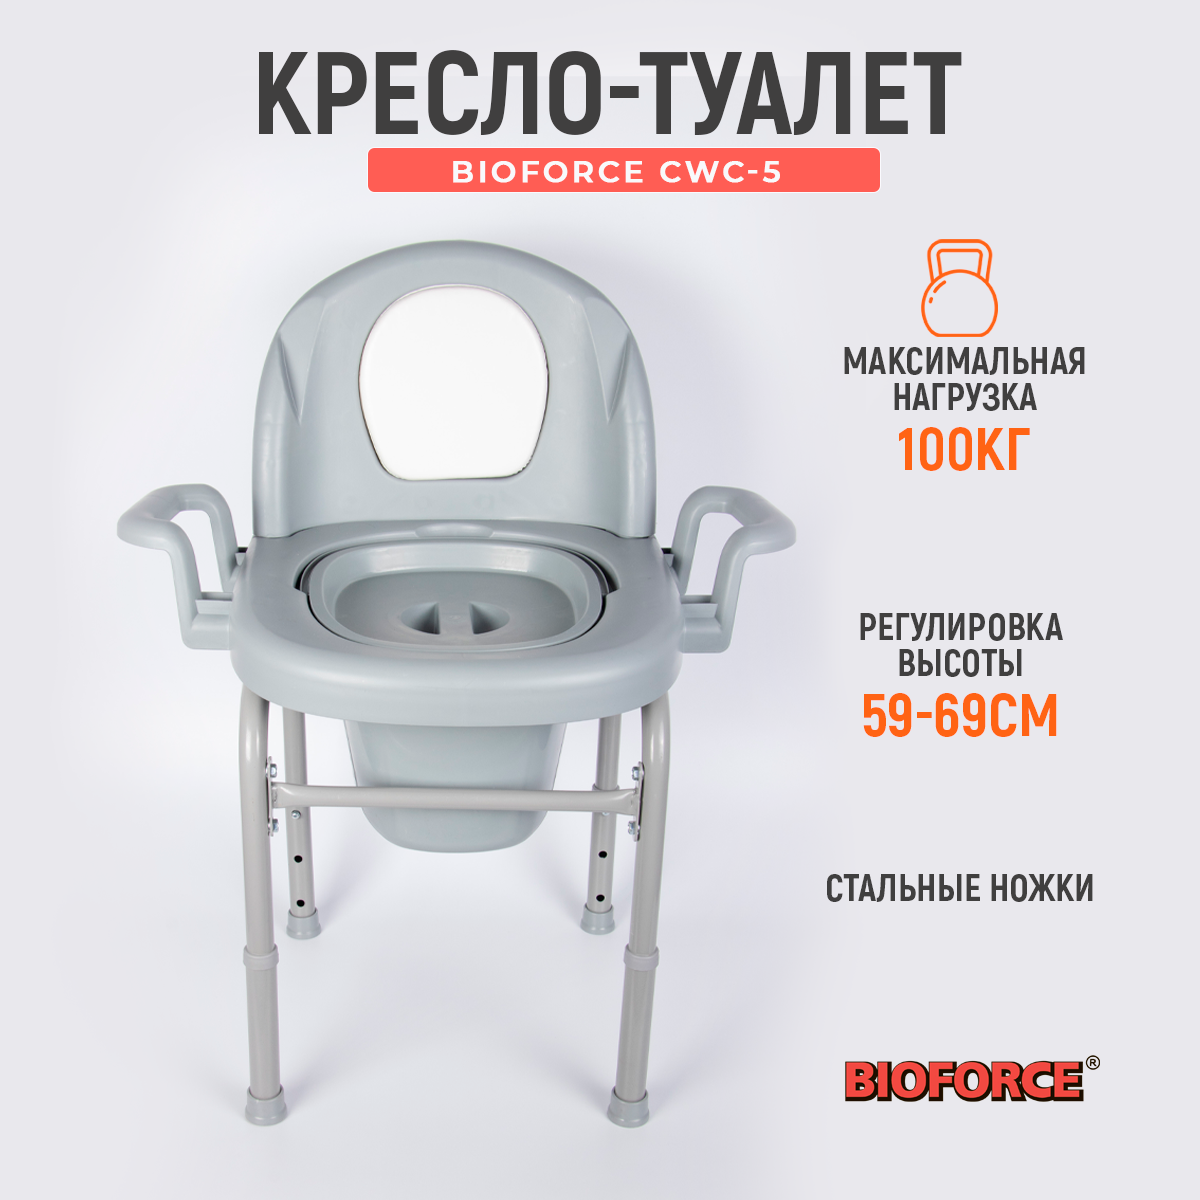 Биотуалет кресло-туалет BIOFORCE CWC-5